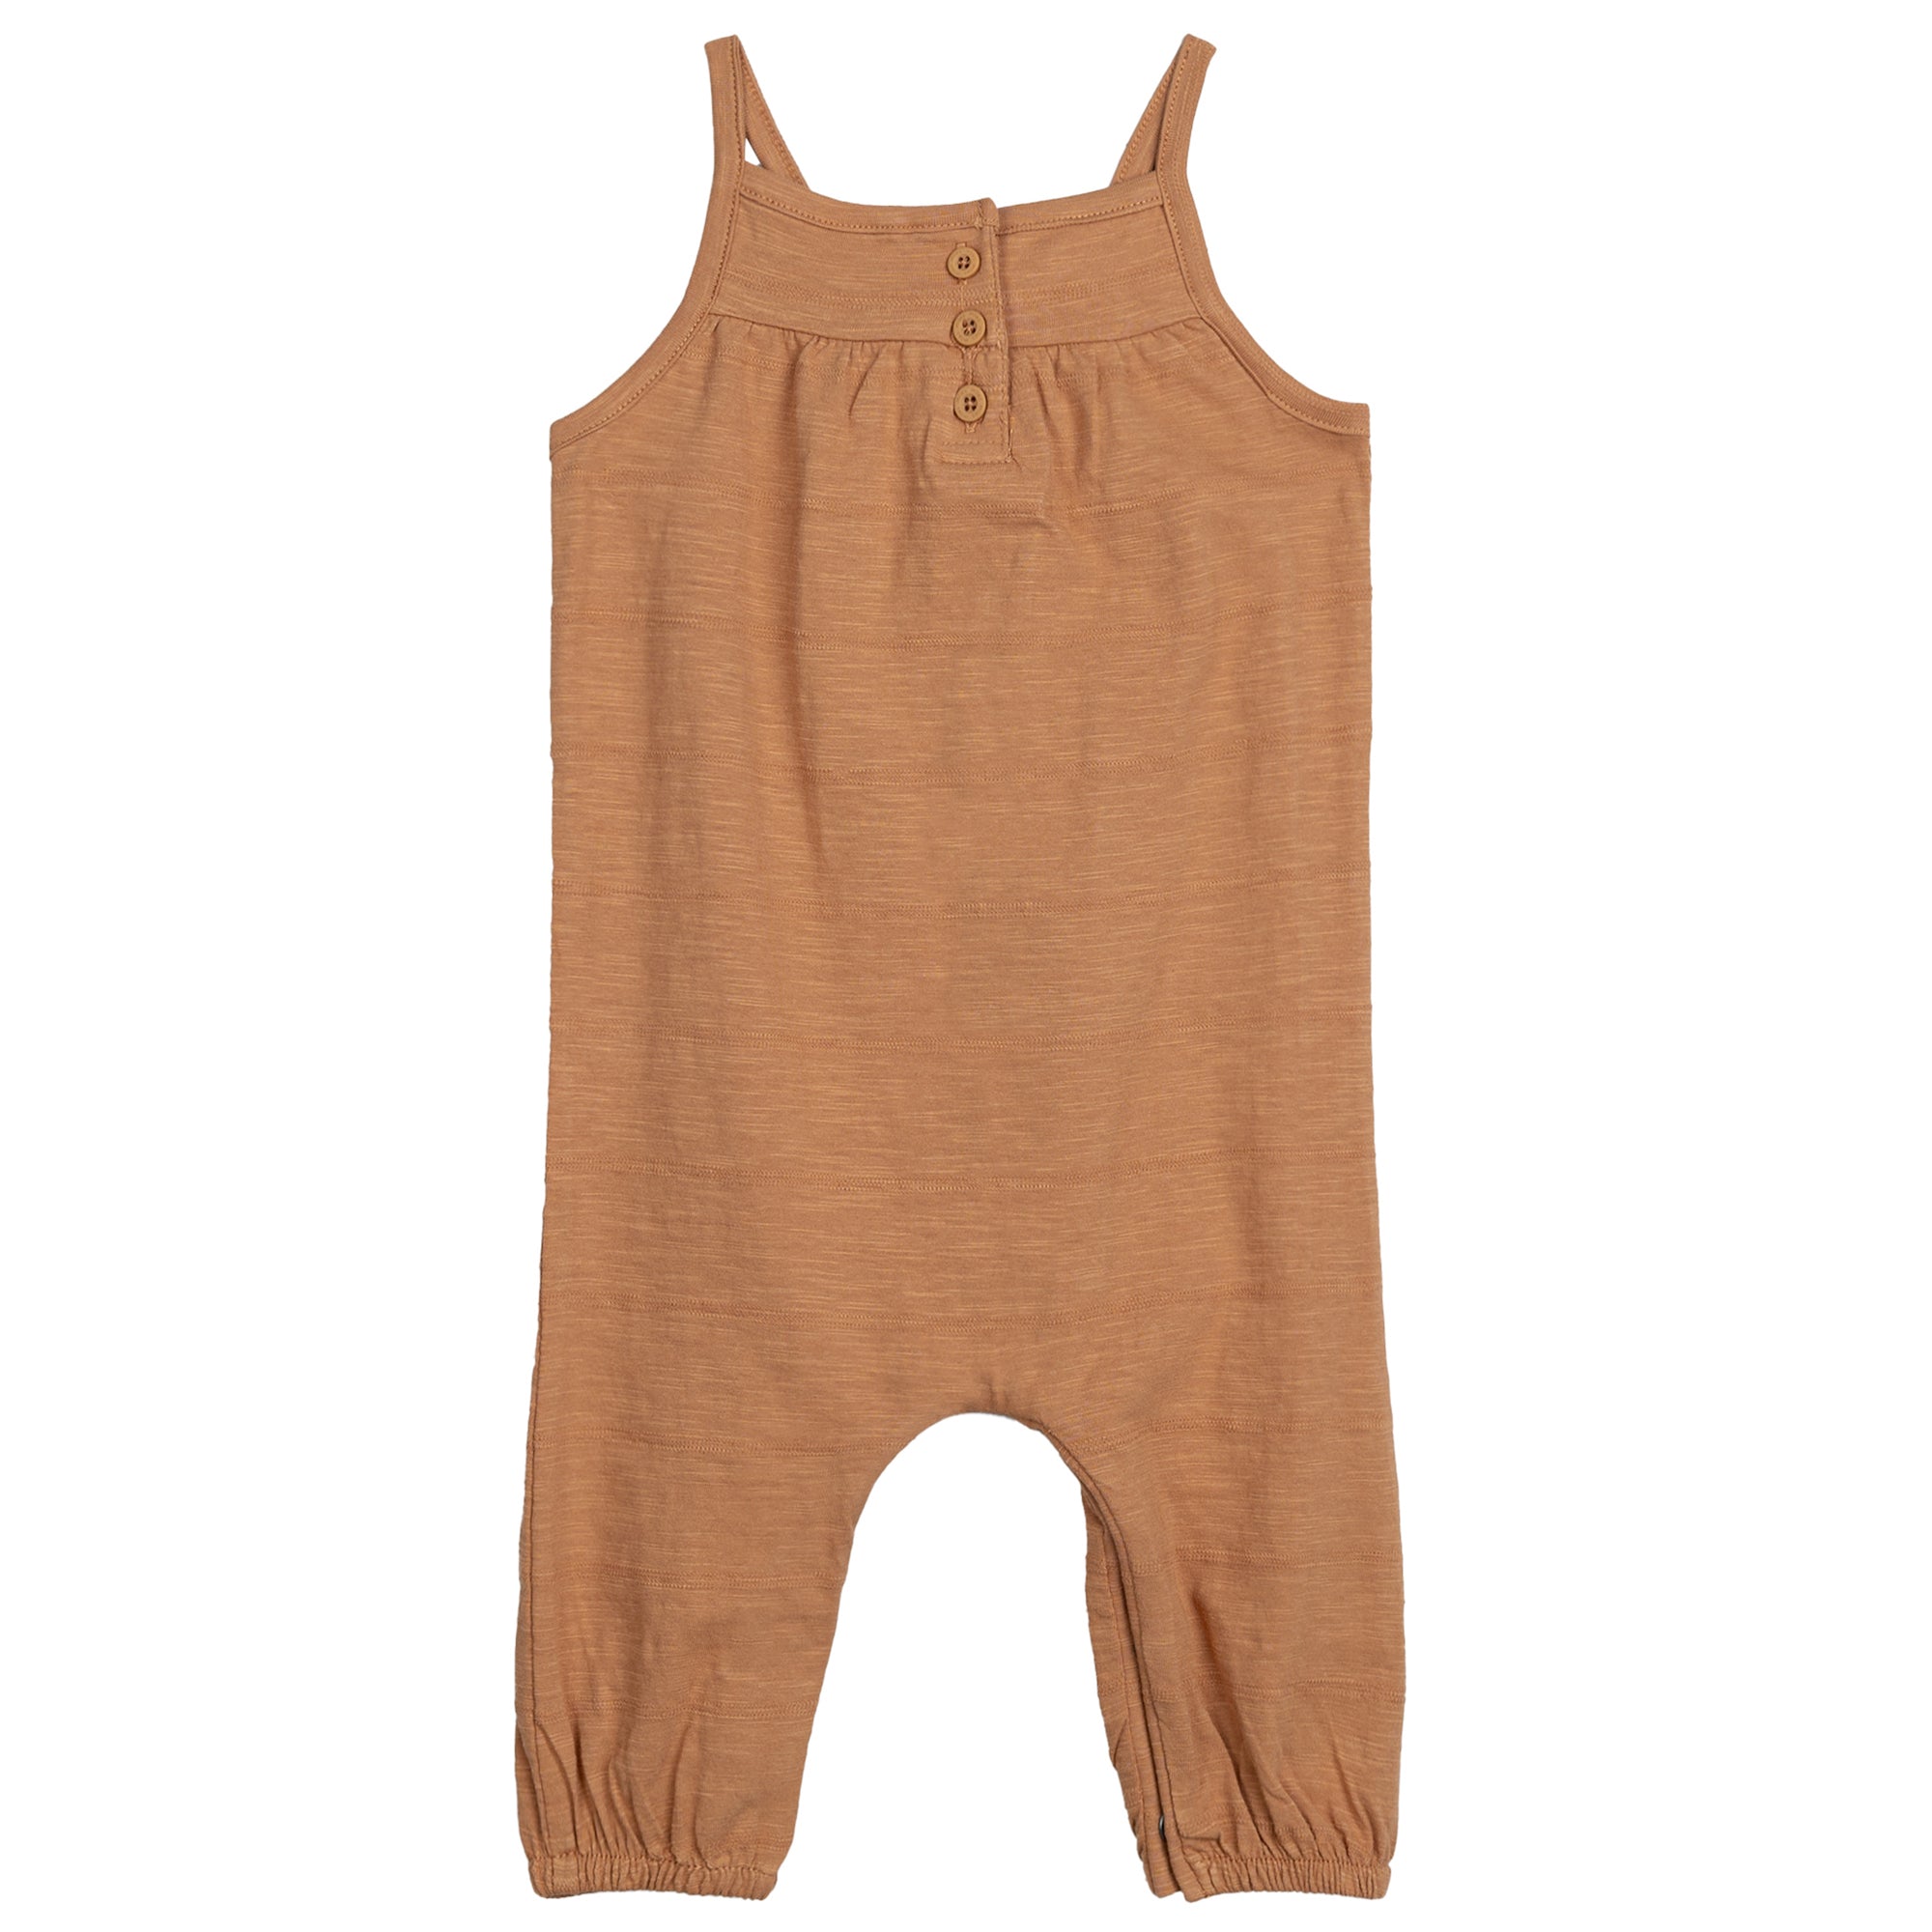 Miles the label - Combinaison terracotta en jersey texturé pour bébé